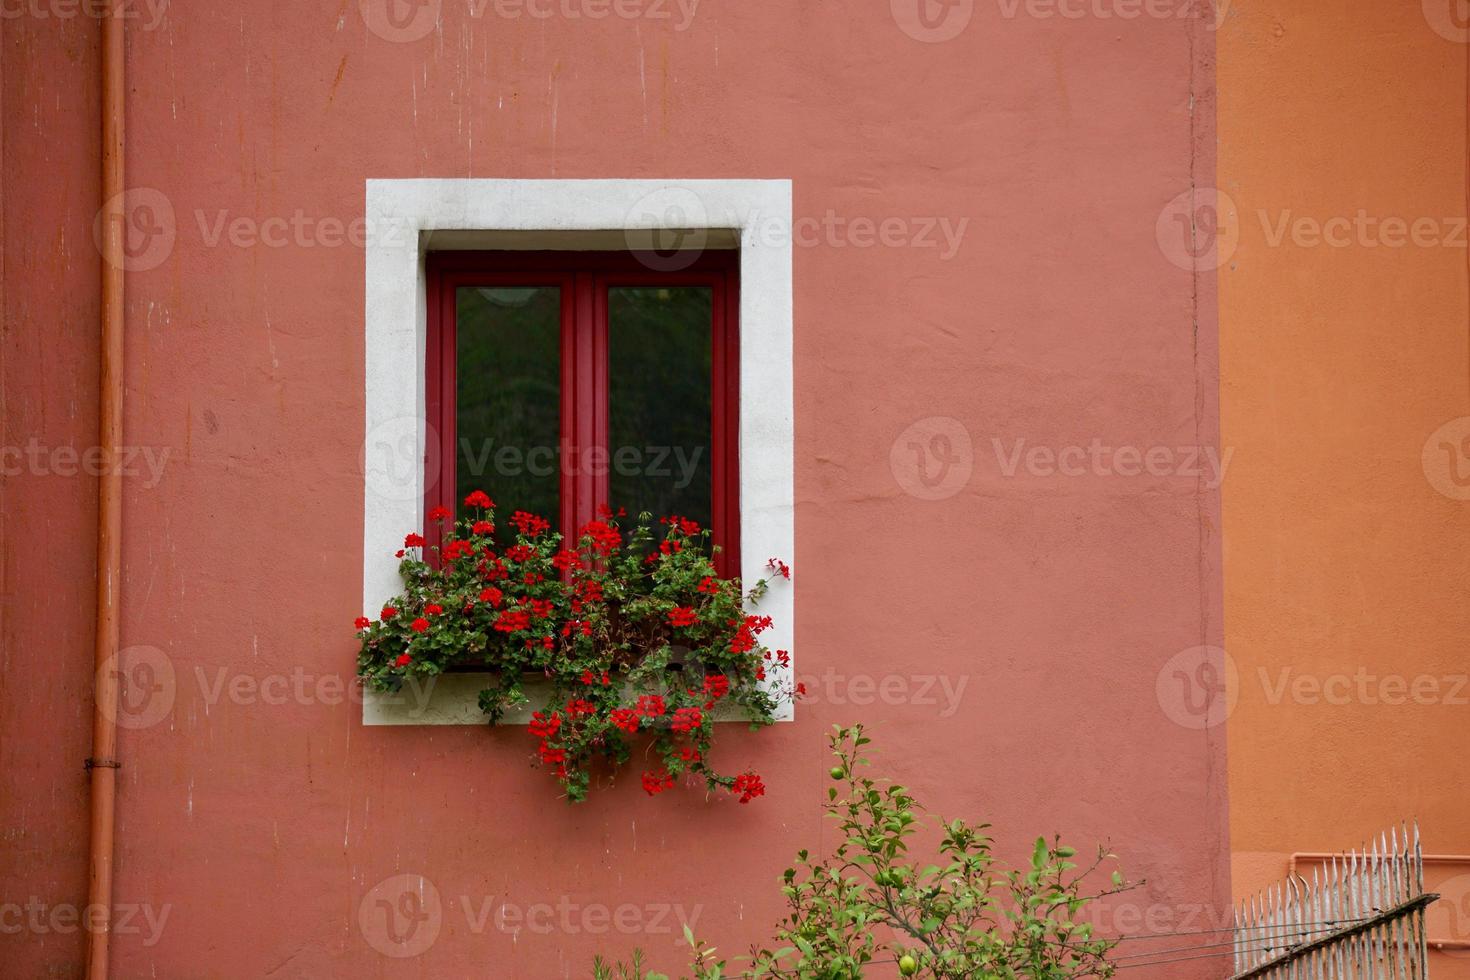 raam op de rode gevel van het huis foto